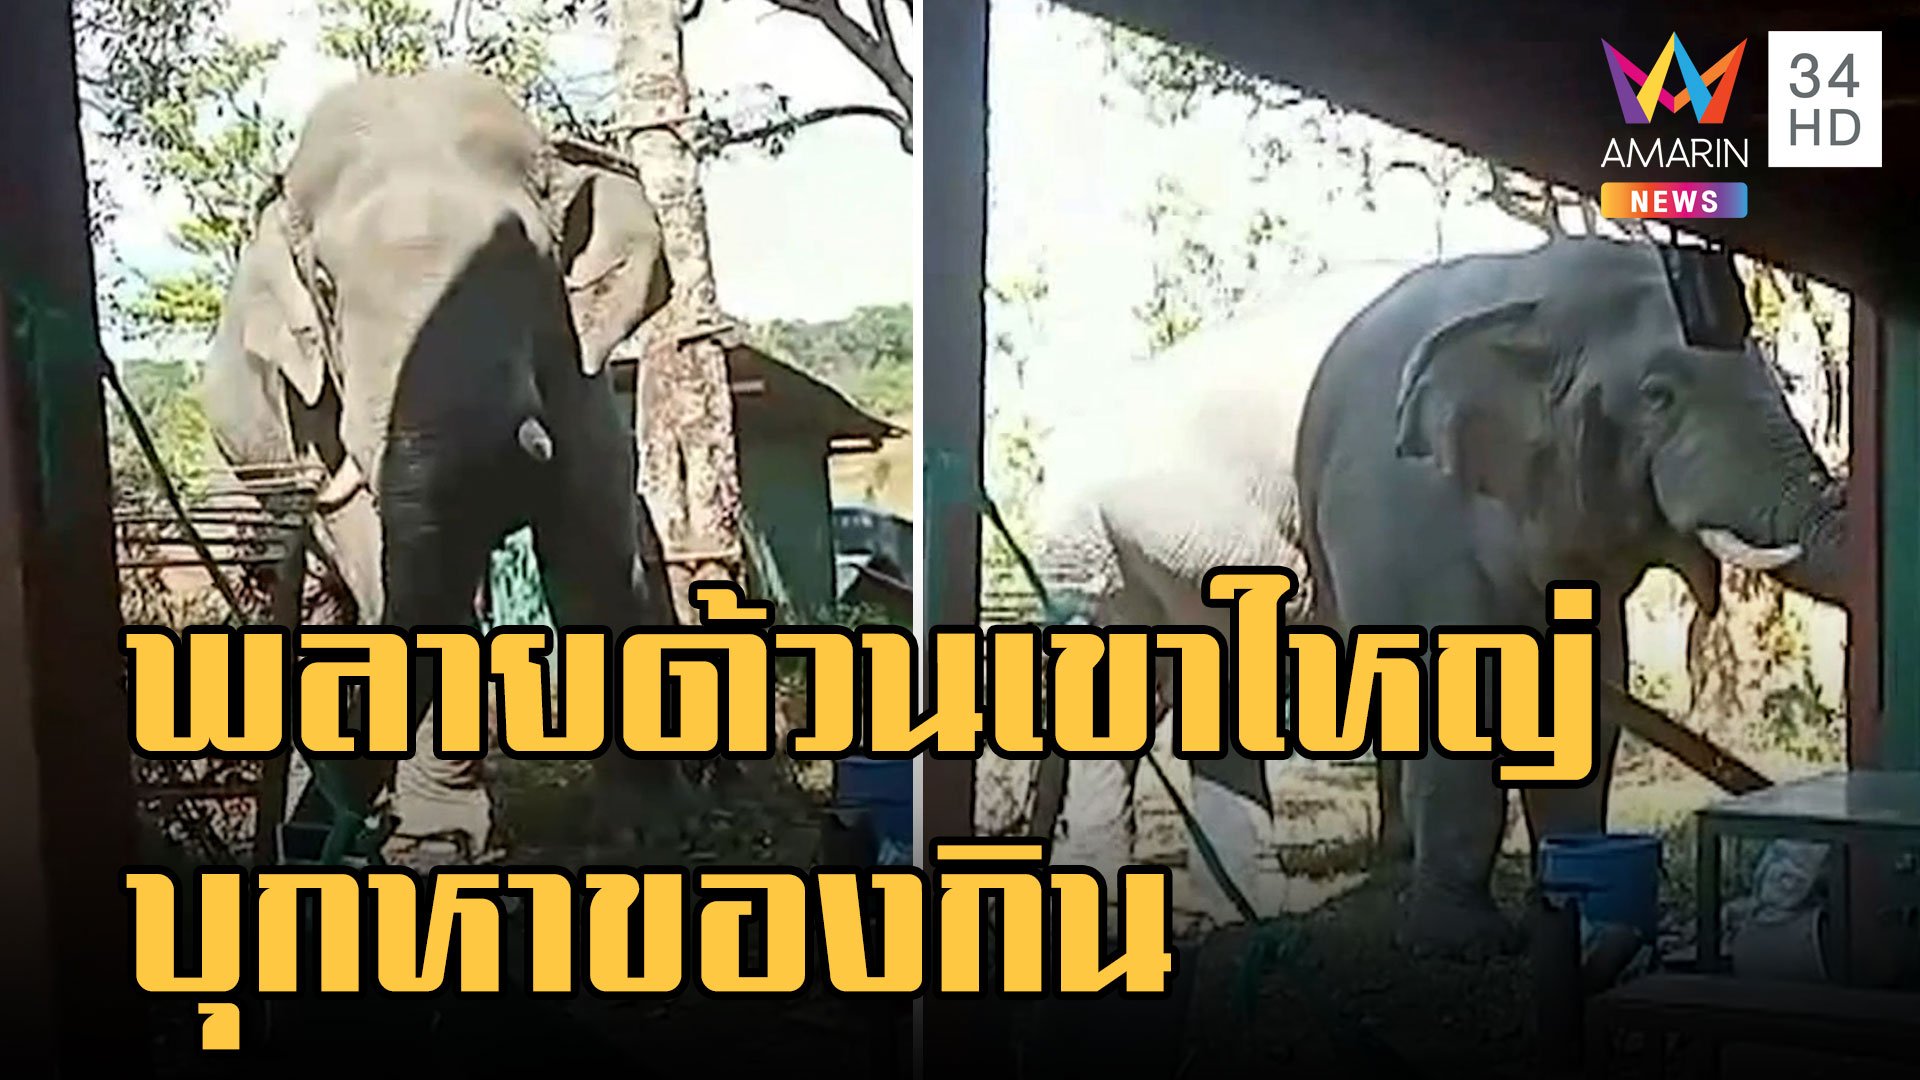 พลายด้วน ช้างป่าเขาใหญ่บุกบ้าน จนท.ขโมยอาหาร | ข่าวอรุณอมรินทร์ | 26 ม.ค. 66 | AMARIN TVHD34